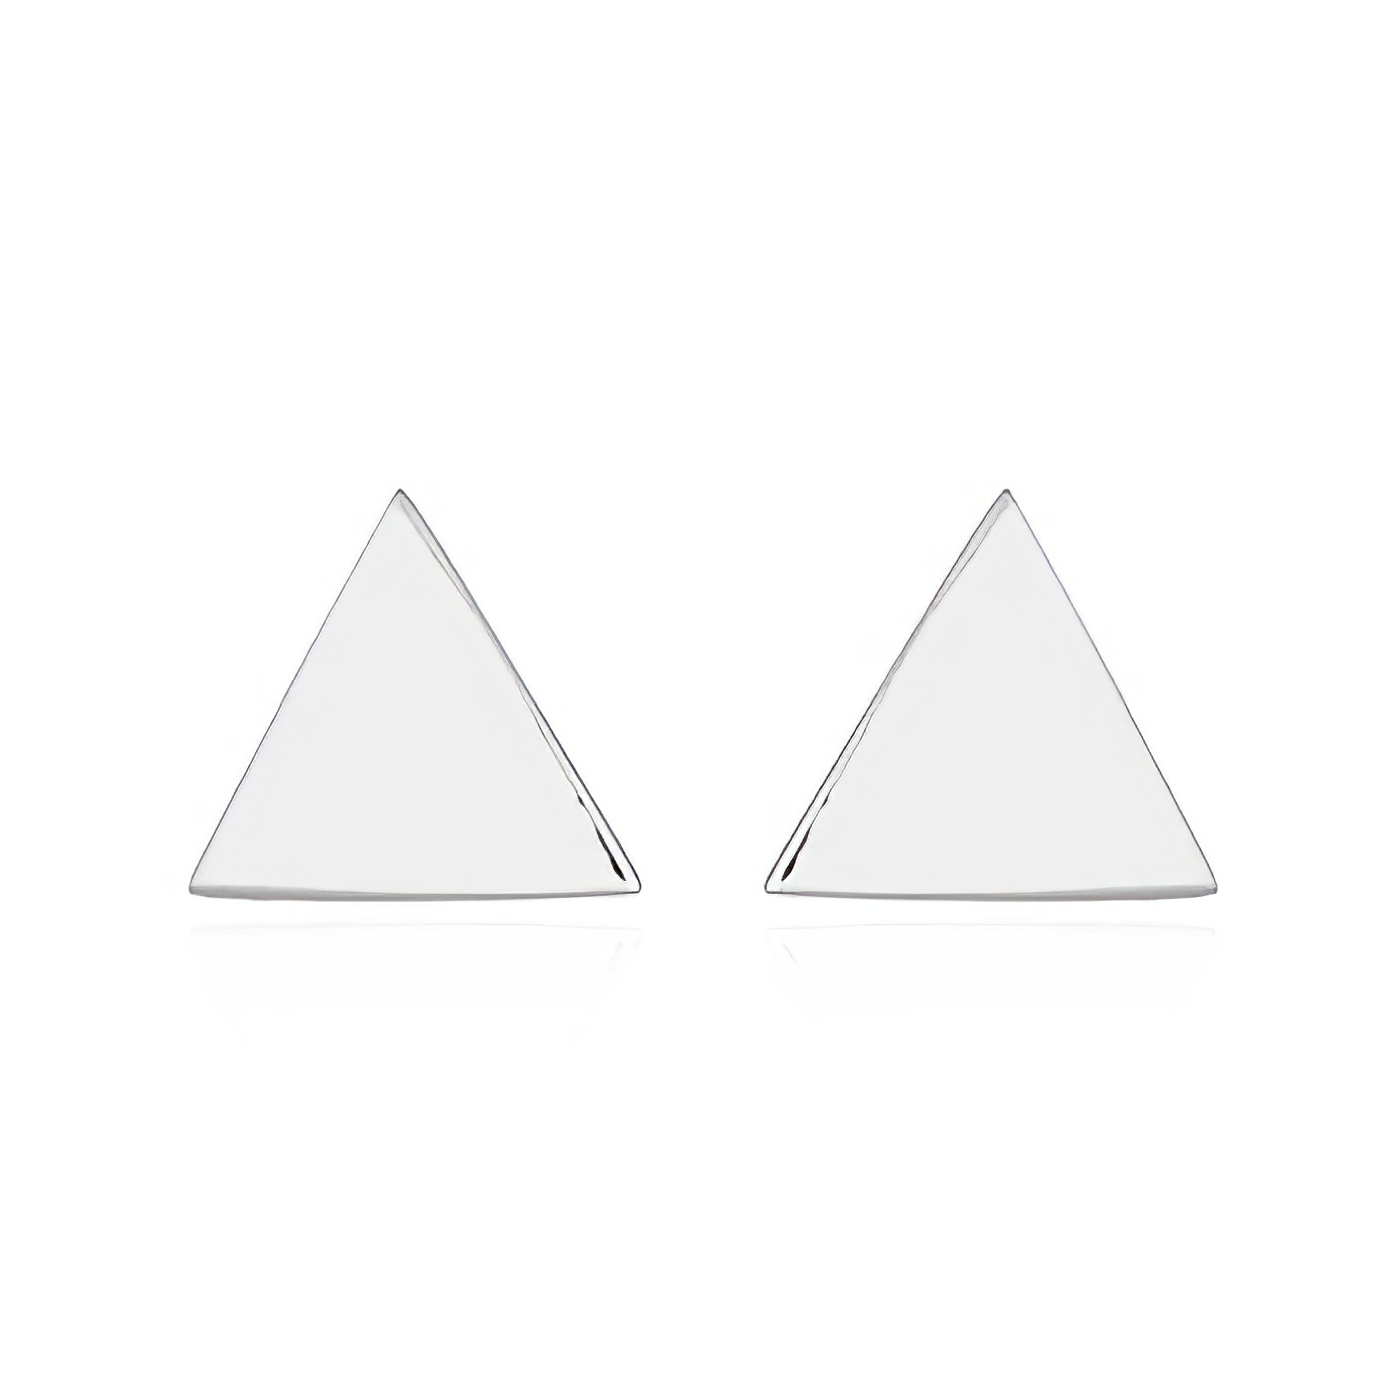 Little Plain Triangle Silver Stud Earrings by BeYindi 